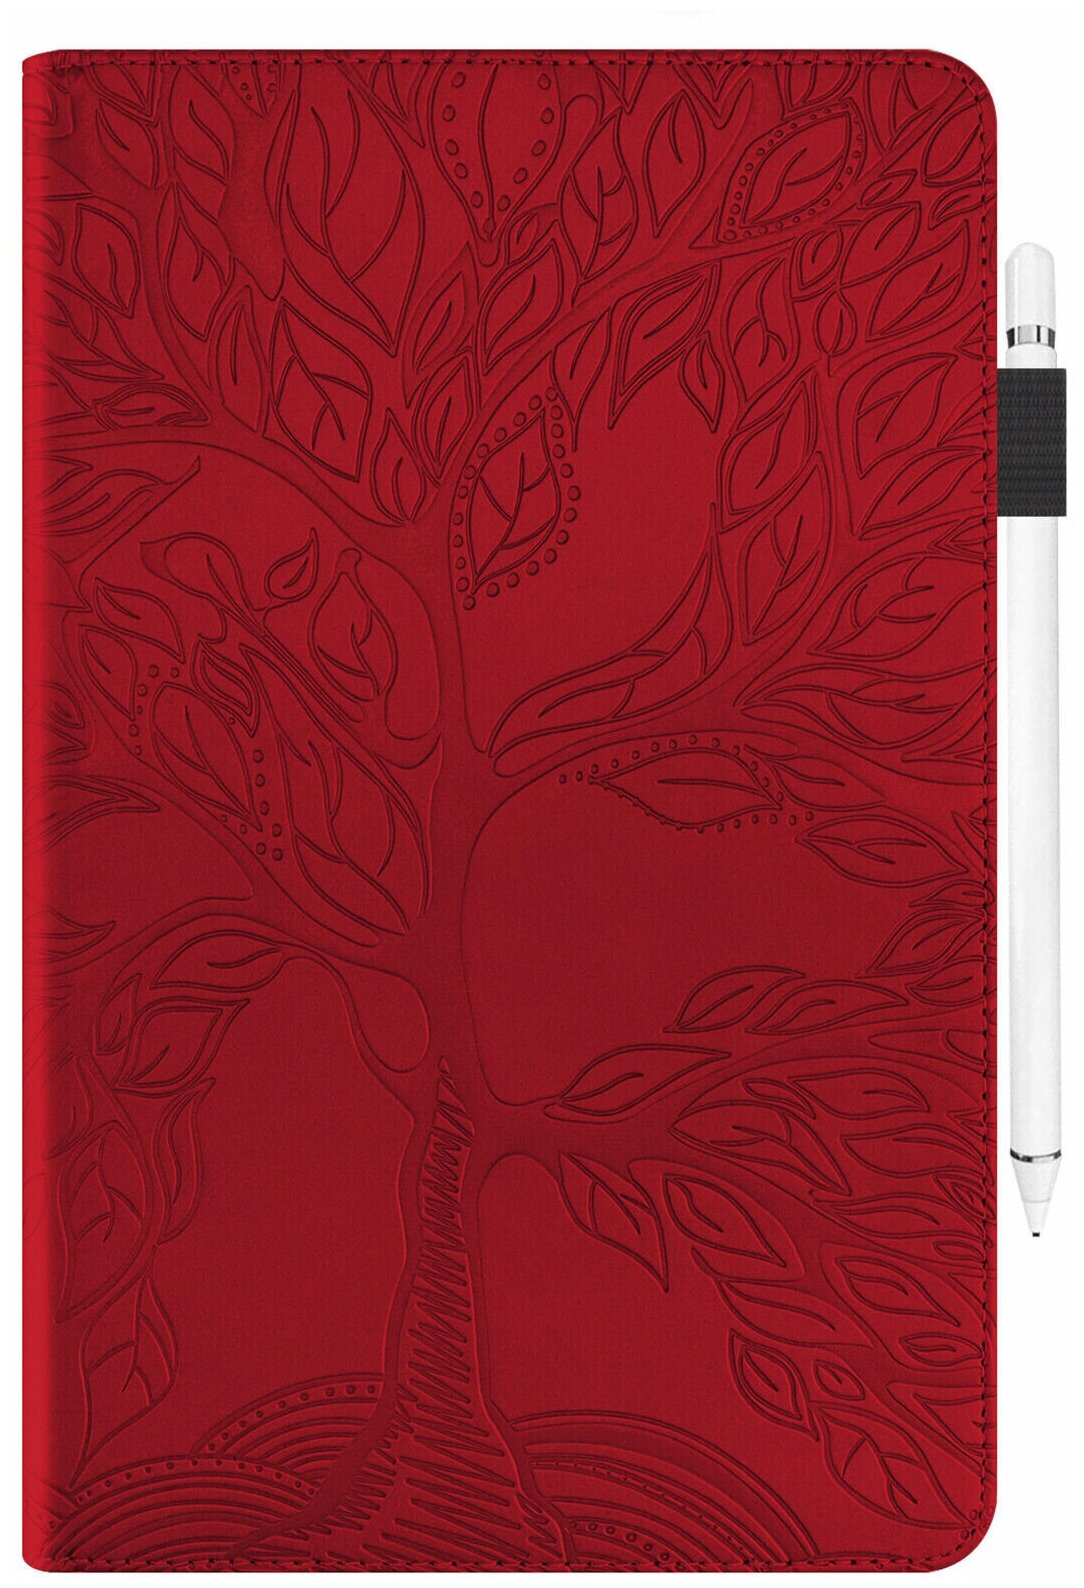 Чехол "Дерево жизни" цвет рубиново-красный для планшета IPAD 5/6/8/9/Air2 9.7 дюймов